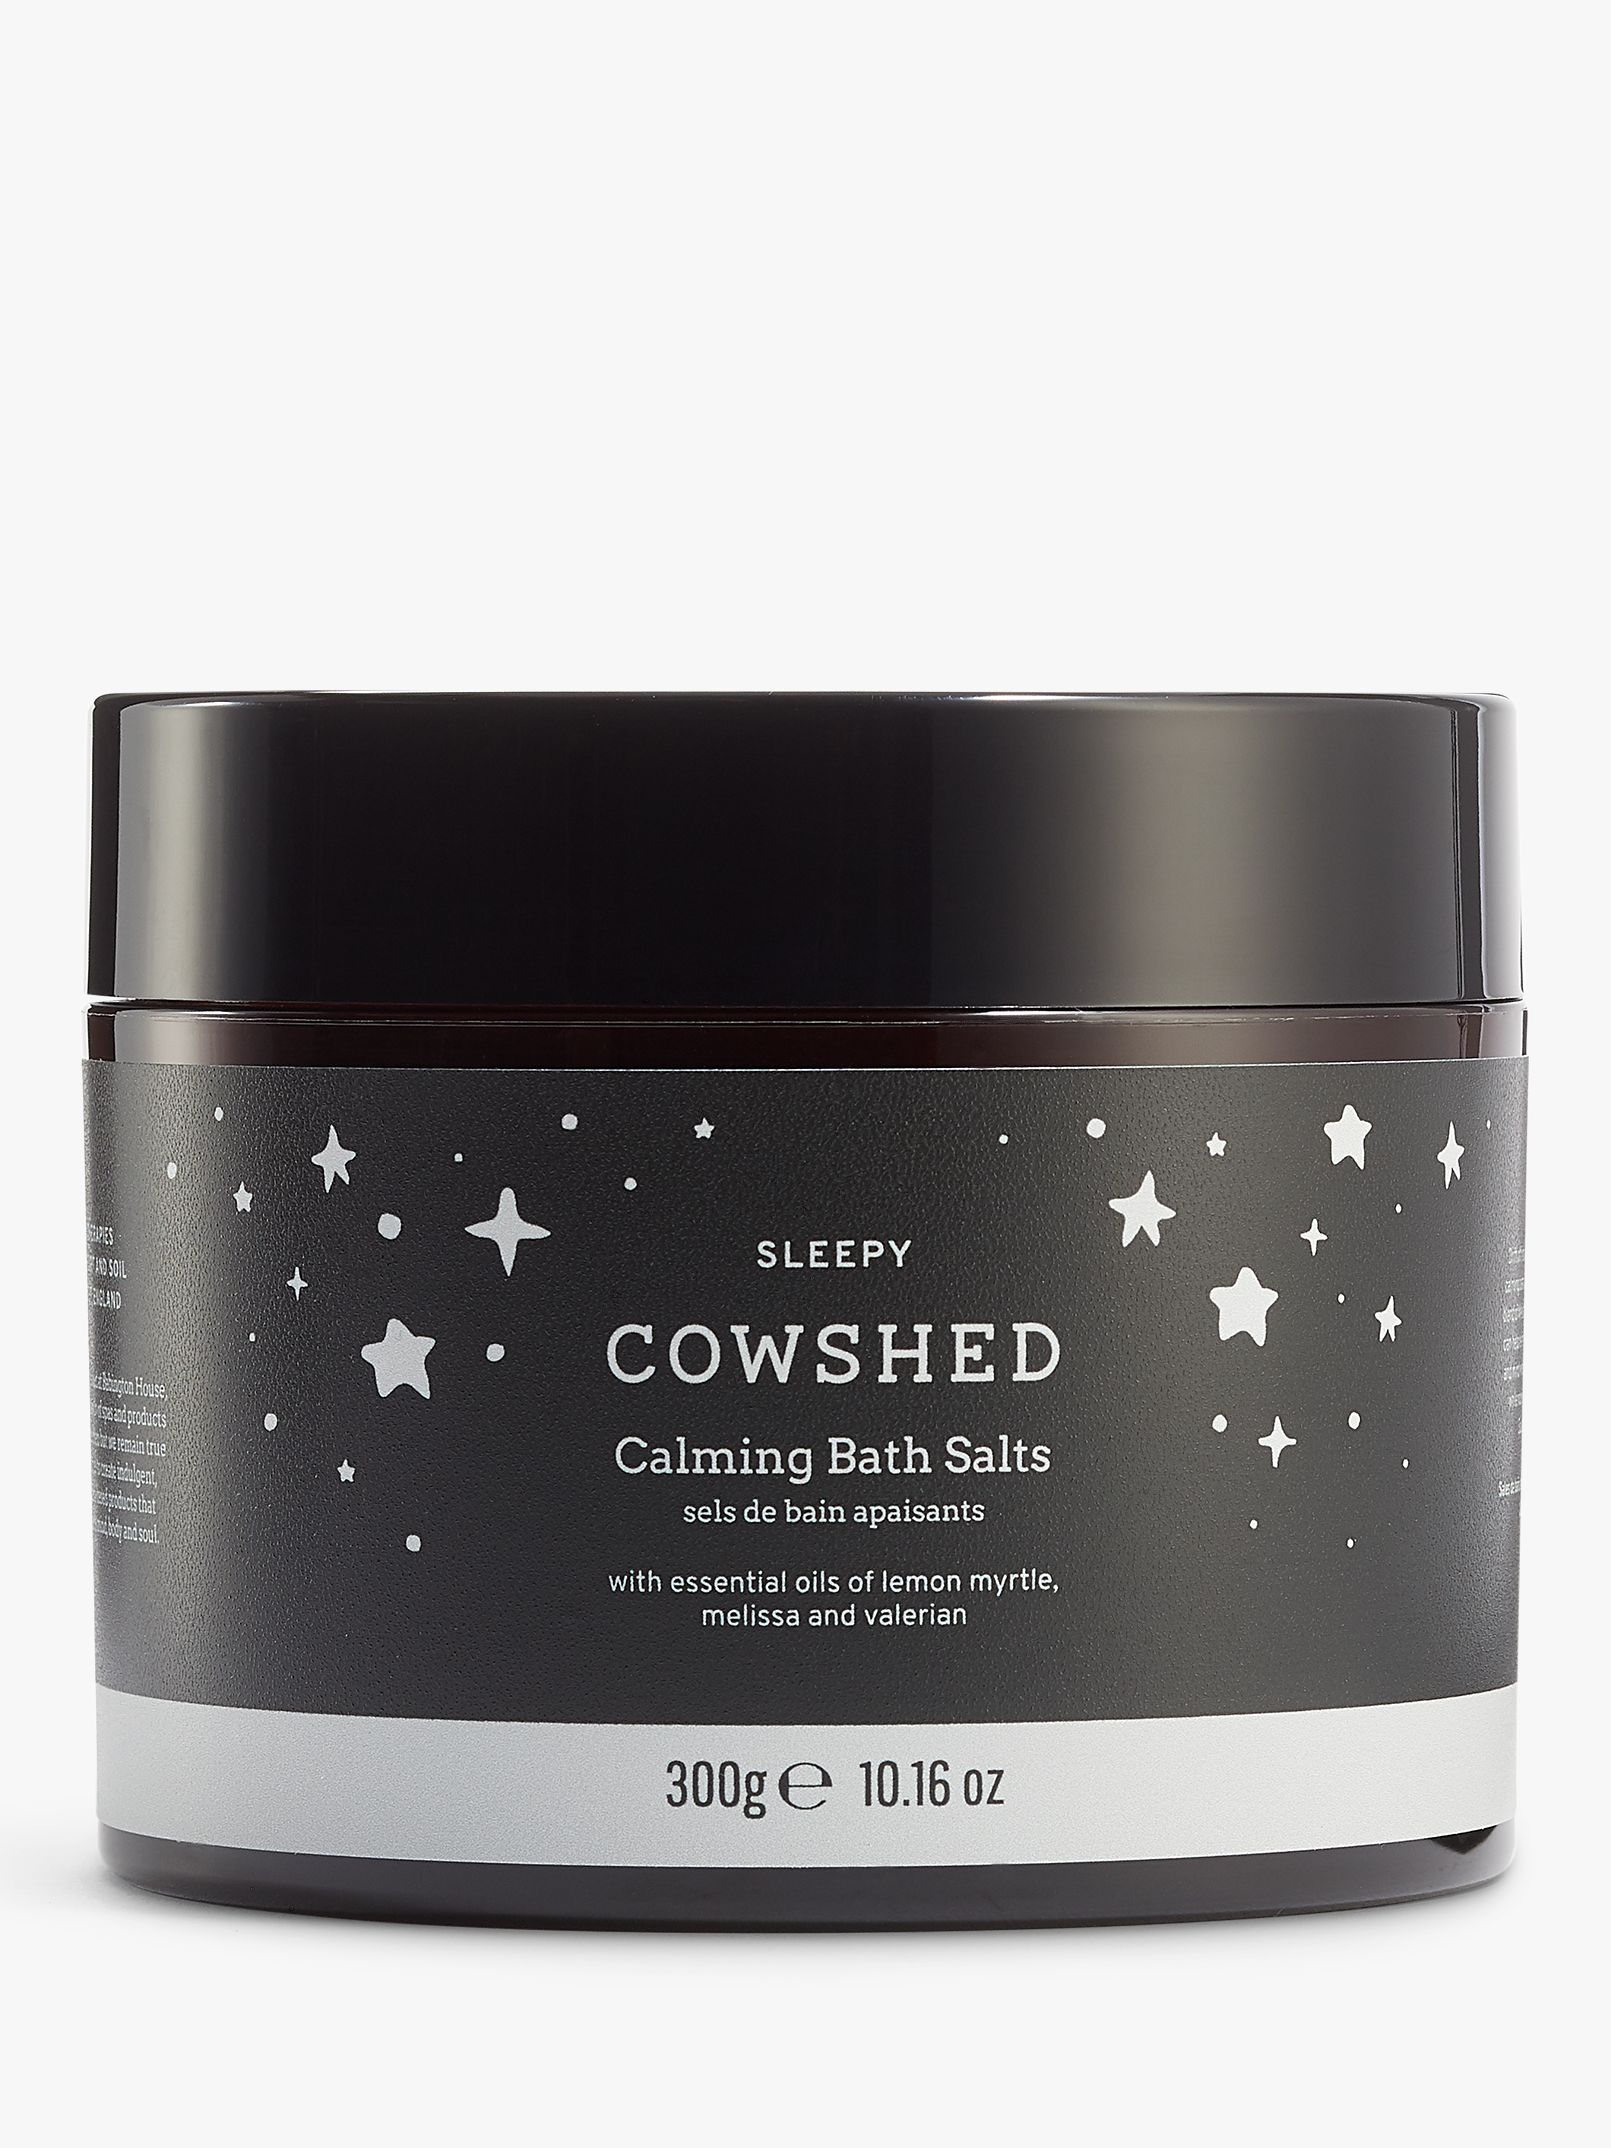 Cowshed Sleep Calming Bath Salts, 300g 1